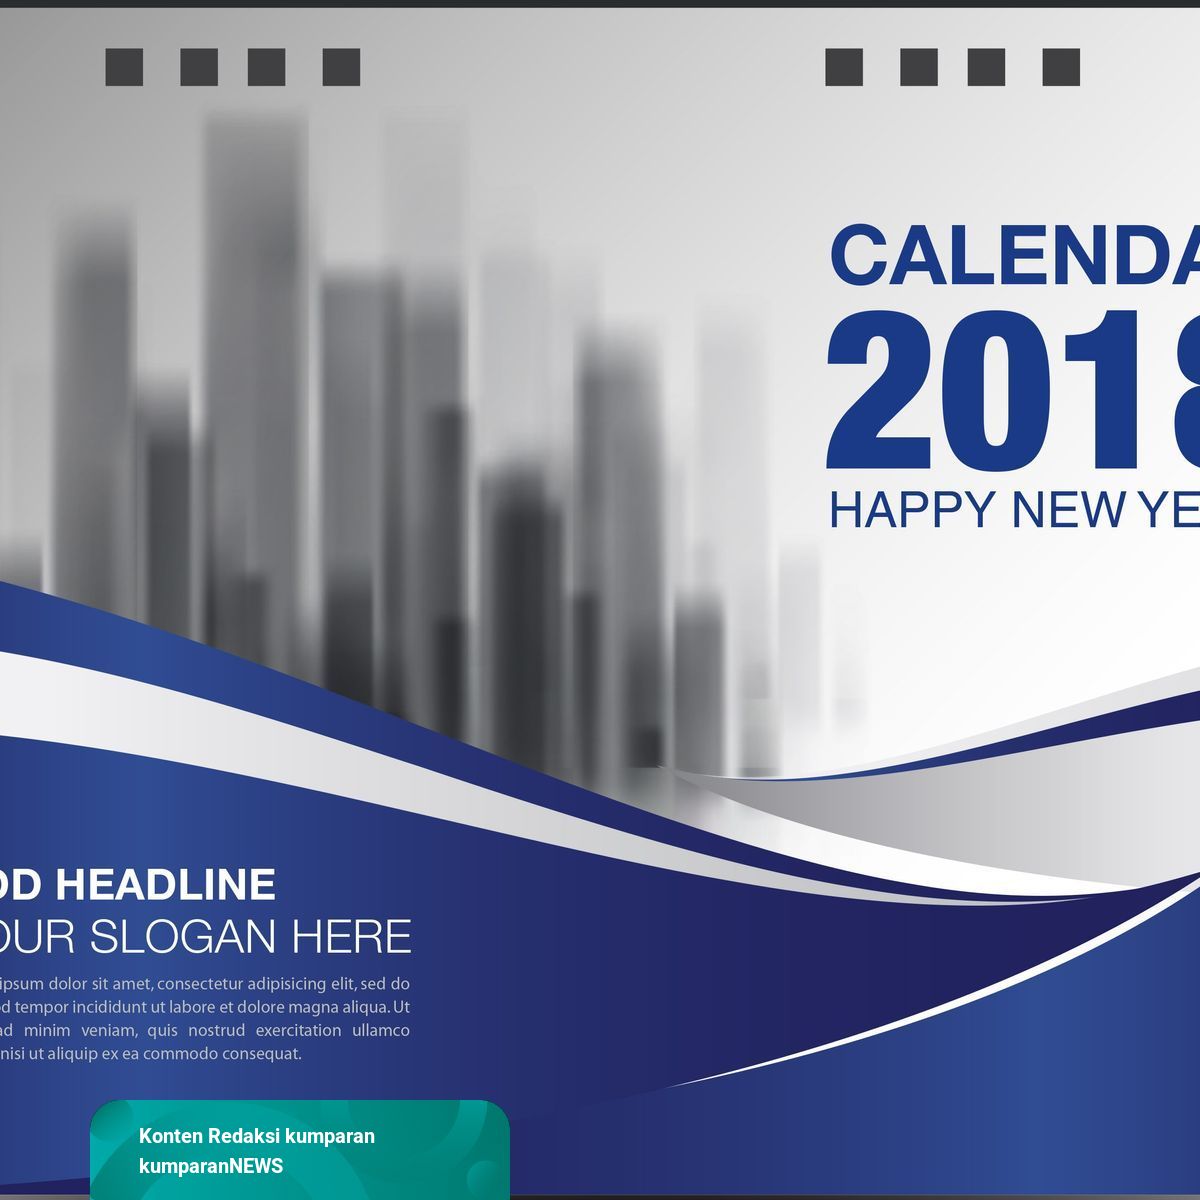 Kalender Libur dan Cuti Bersama Tahun 2018 | kumparan.com